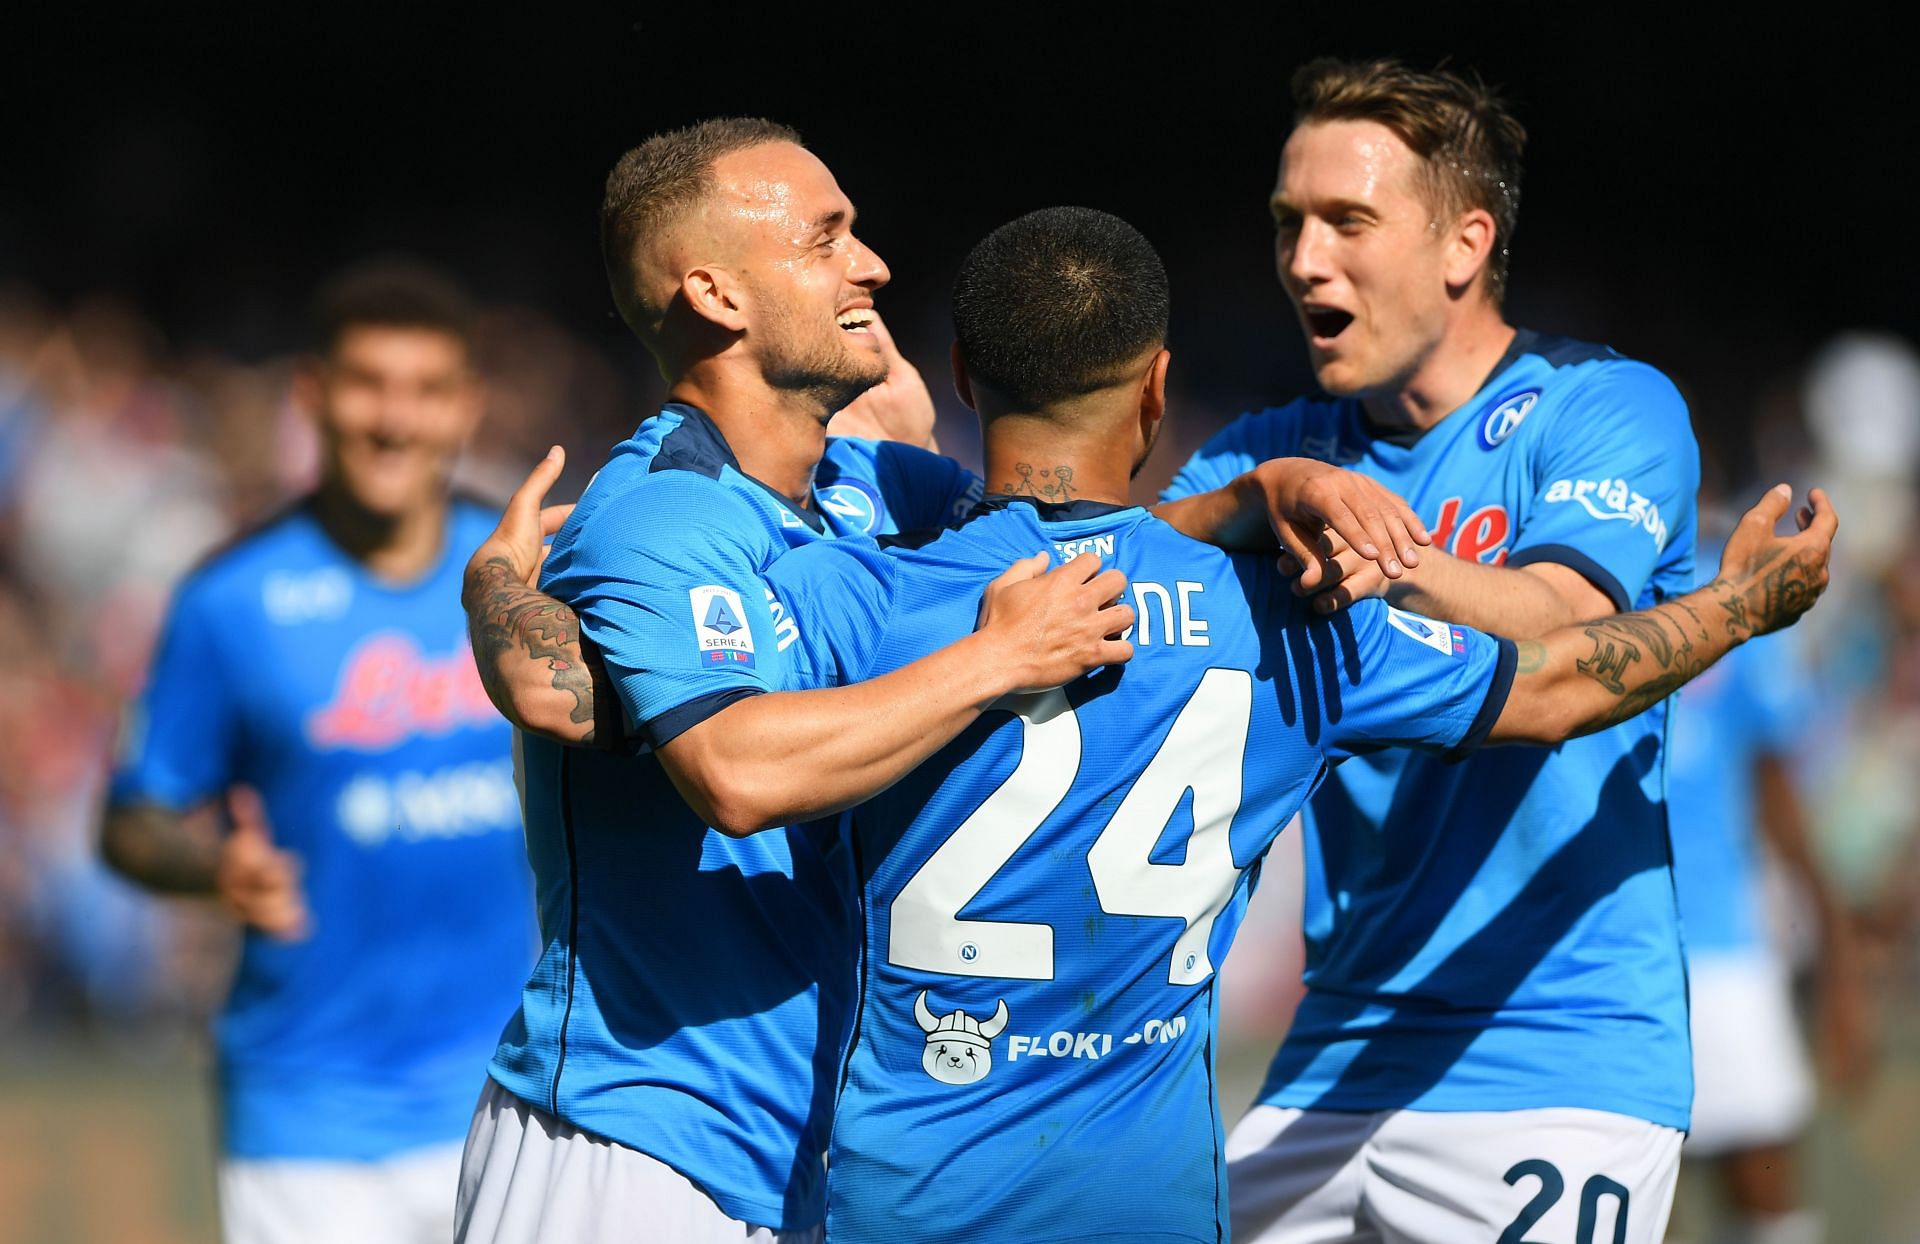 SSC Napoli will face Spezia on Saturday - Serie A